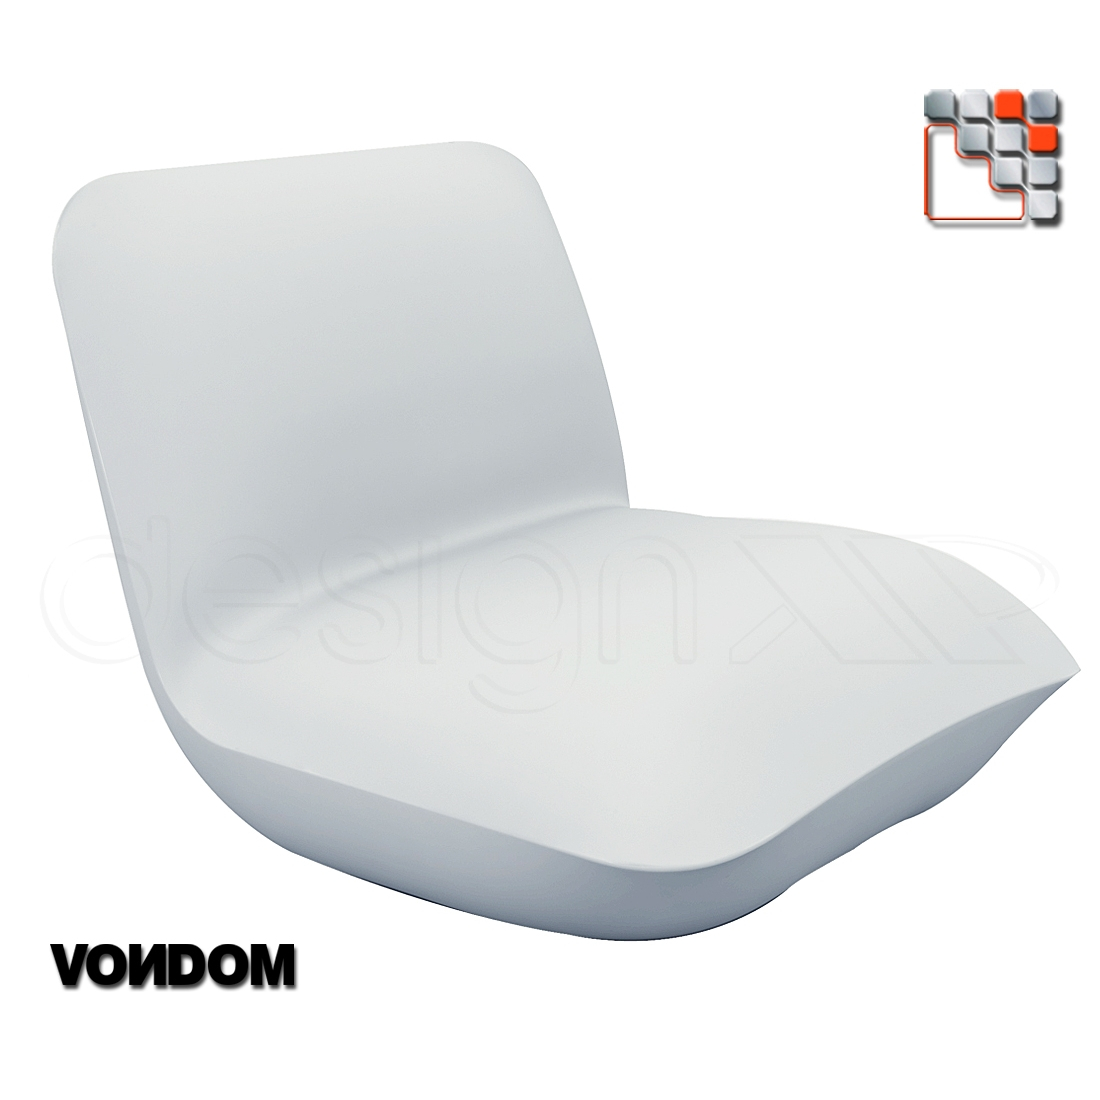 VONDOM designer armchair V50-55001  Shade Sail - Outdoor Furnitures